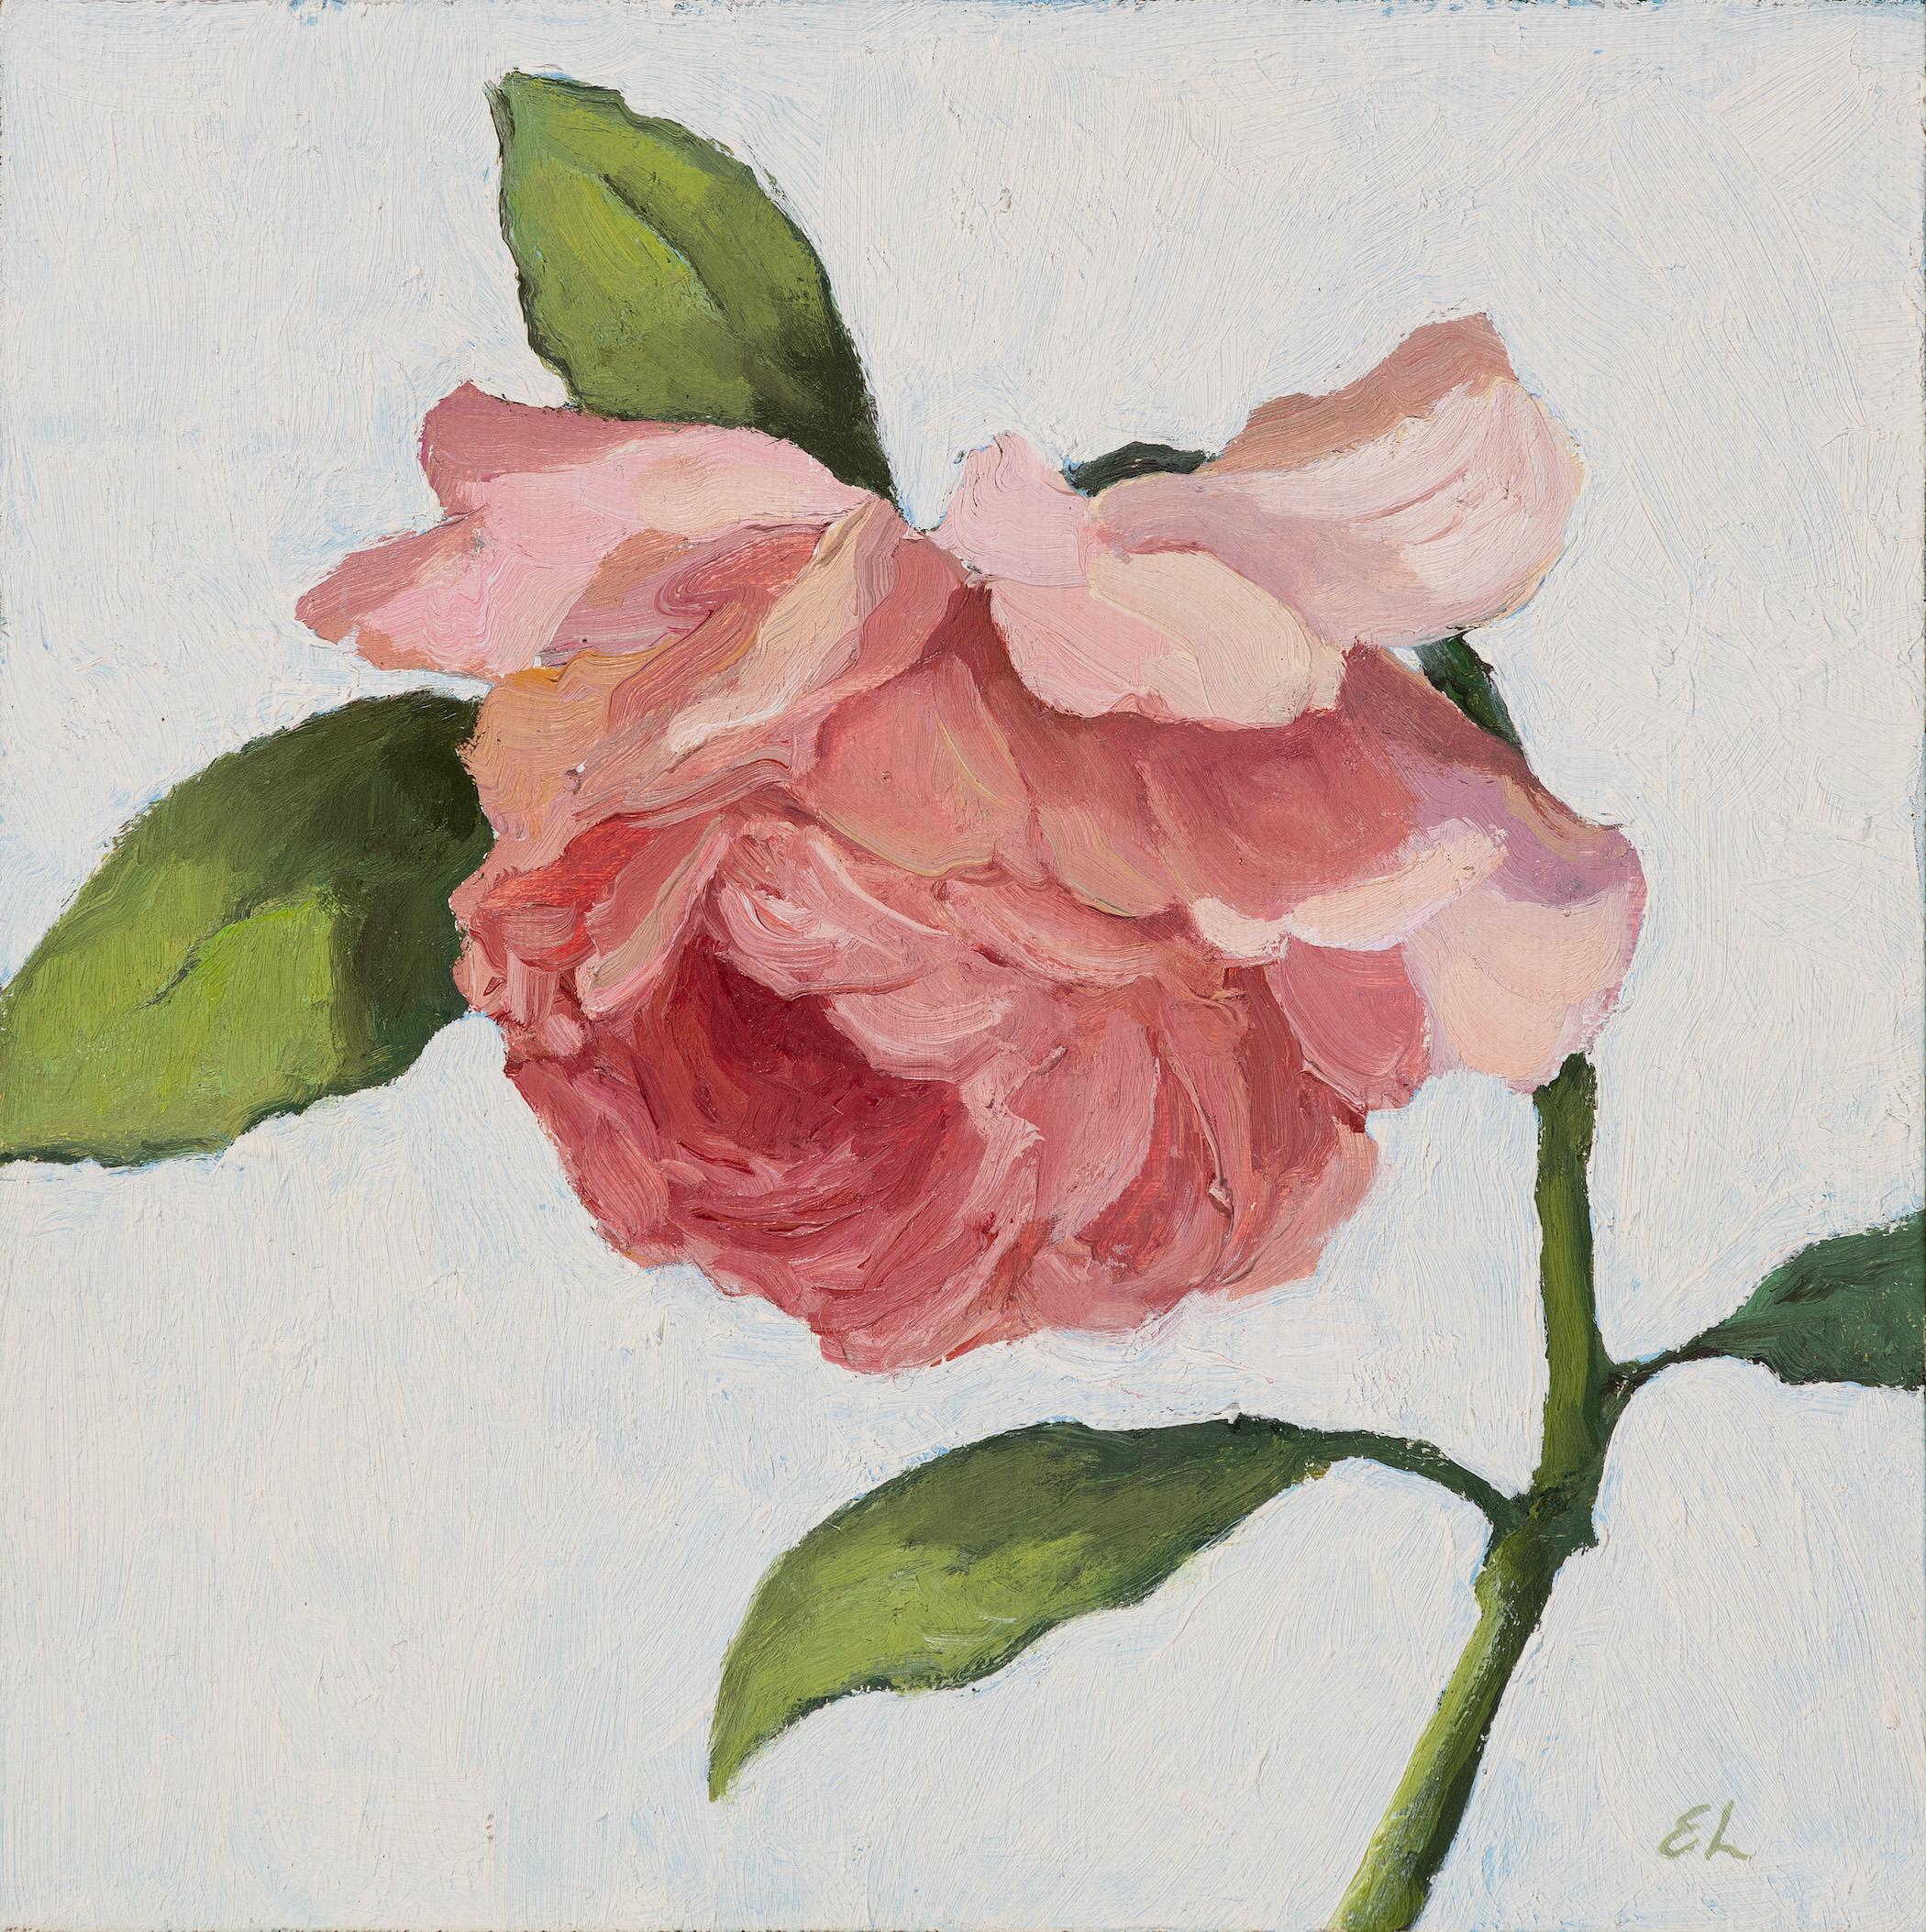 Edwina Lucas Portrait Painting – Kleines realistisches Ölgemälde „Take a Bow“ aus rosa Rosen in einfachem schwebendem Rahmen